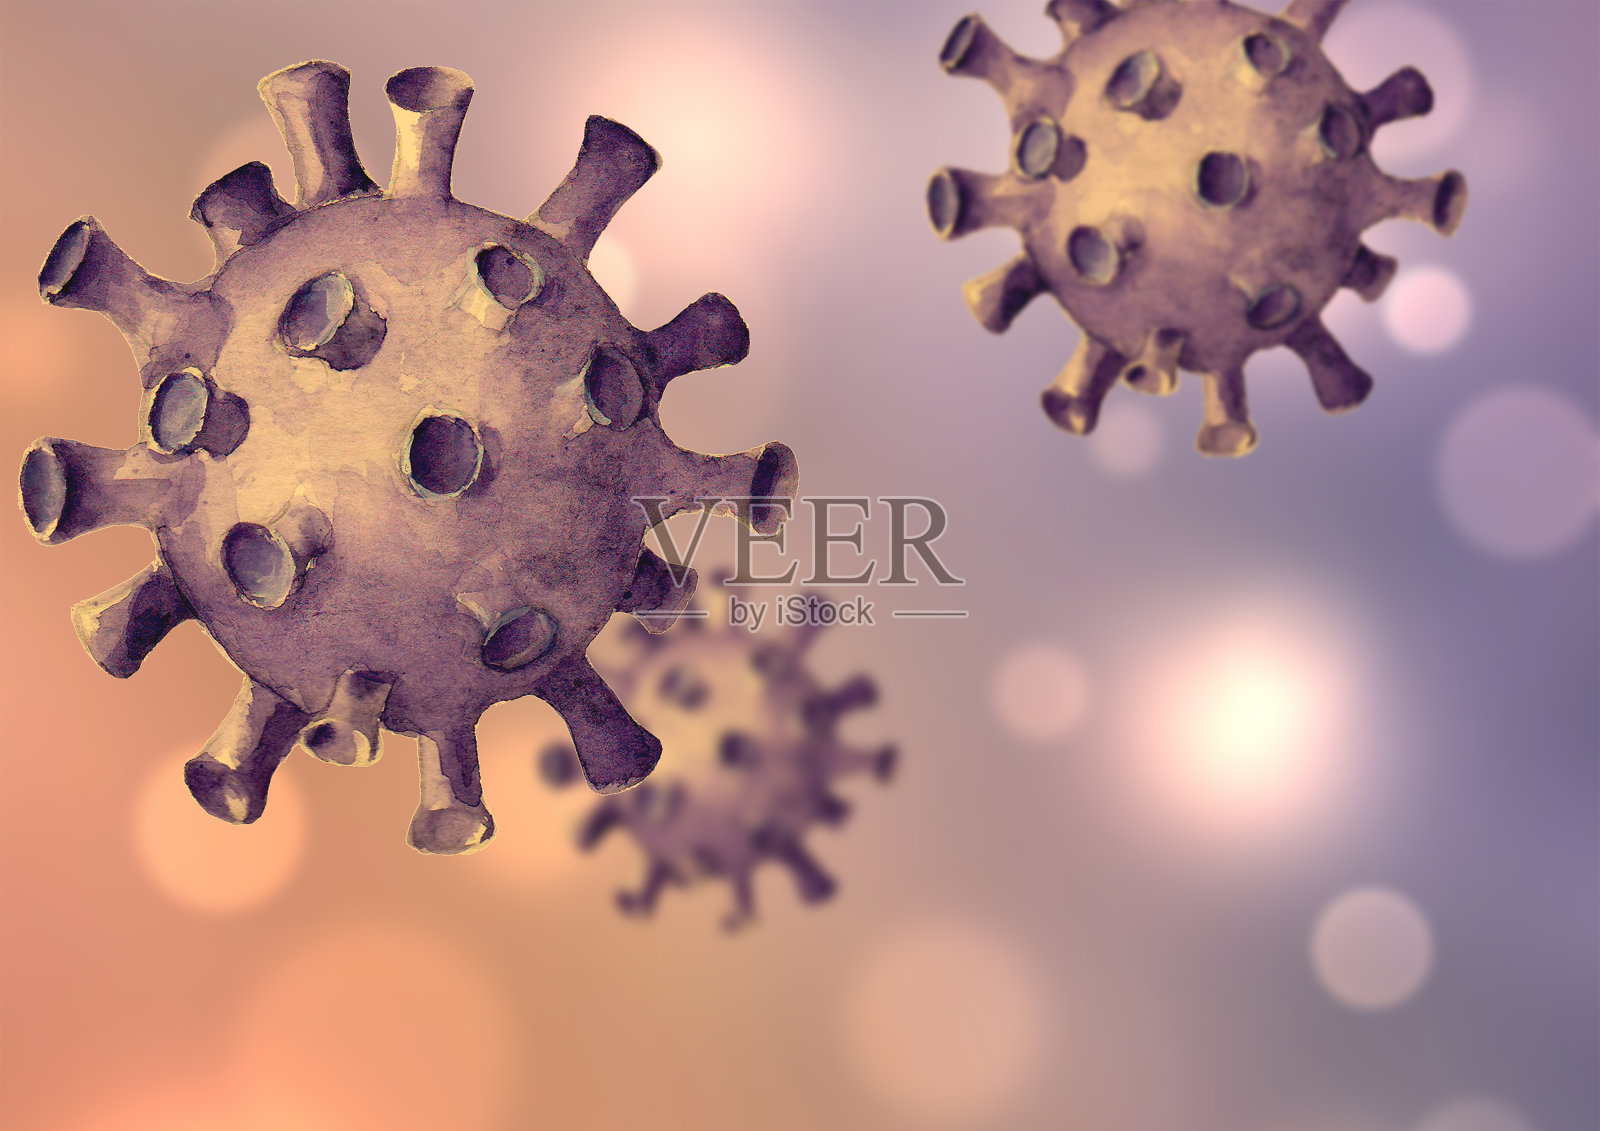 病毒的背景。手绘三维模拟新型冠状病毒细胞插画图片素材